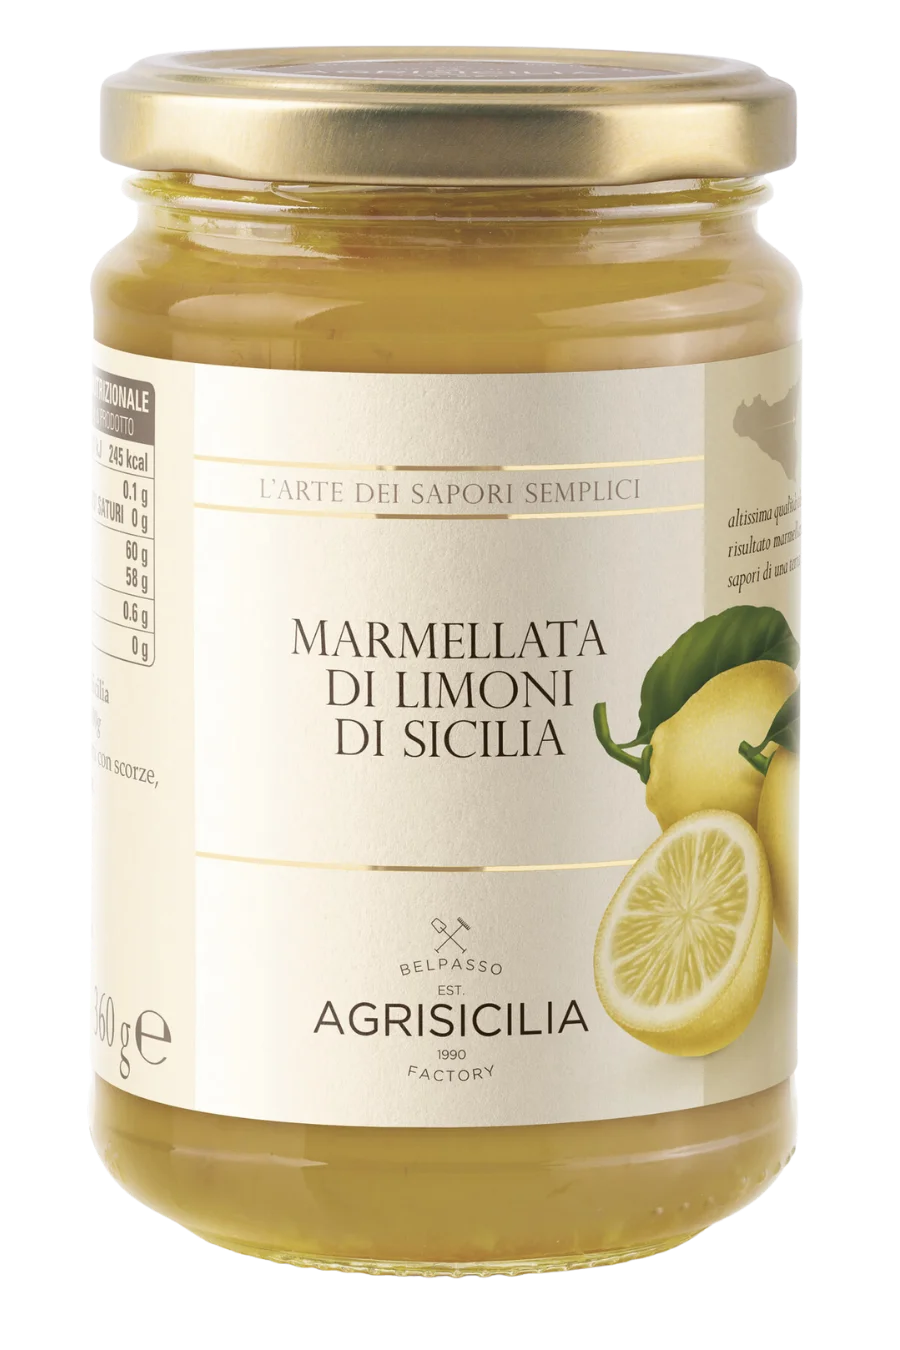 La marmellata è realizzata con limoni di alta qualità, coltivati e raccolti a mano in Sicilia, e rappresenta un prodotto d'eccellenza siciliana dalla freschezza inconfondibile.